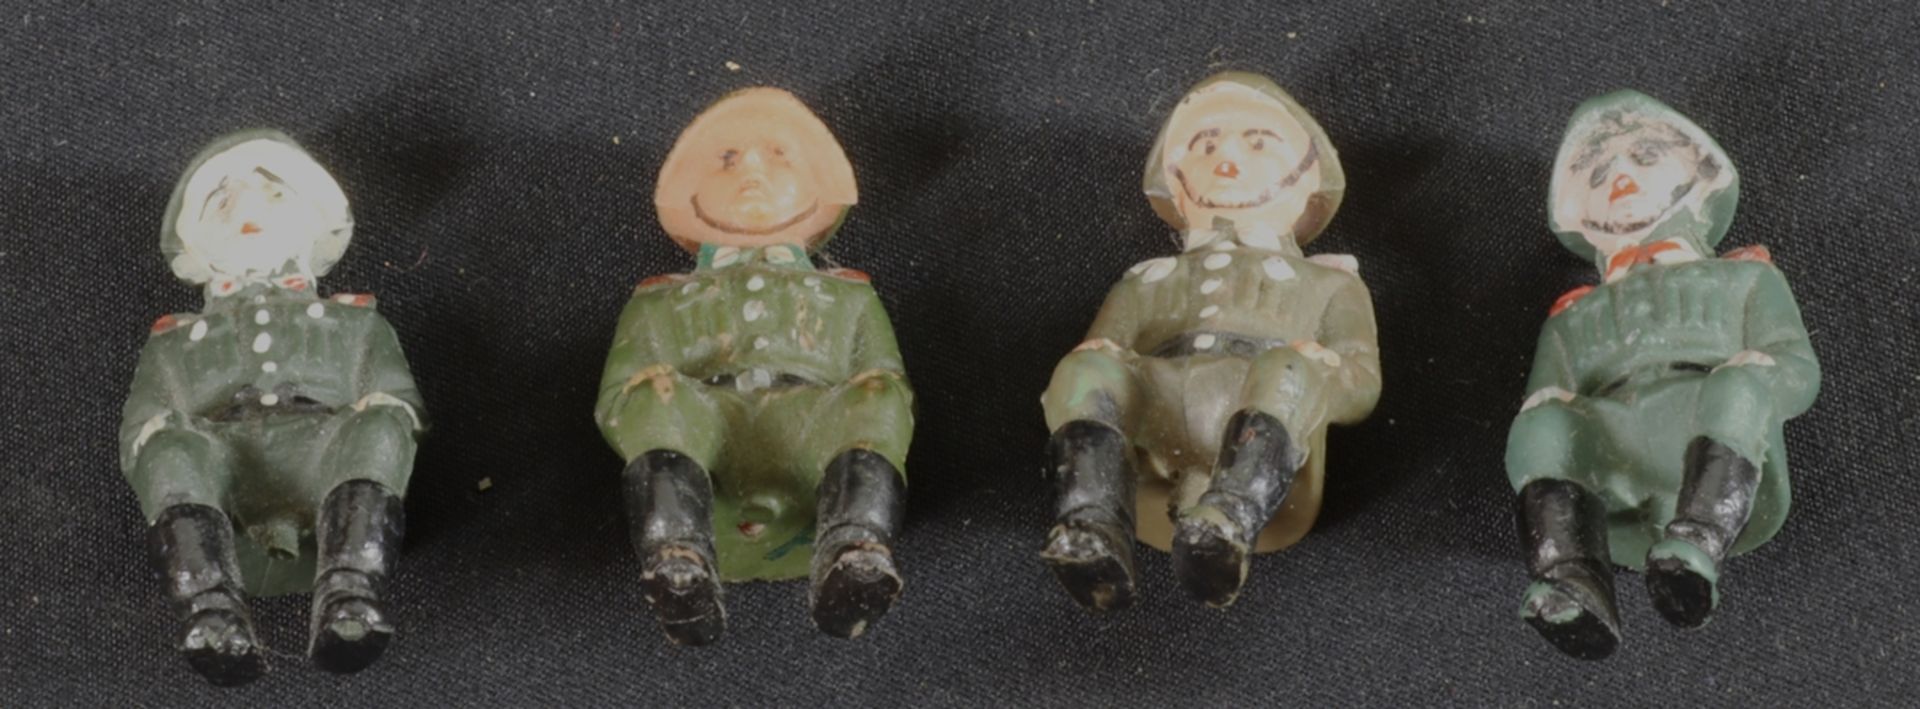 Militärisches Spielzeug, 5 Soldaten, ohne Herstellermarke, DDR und älter, Deutsch